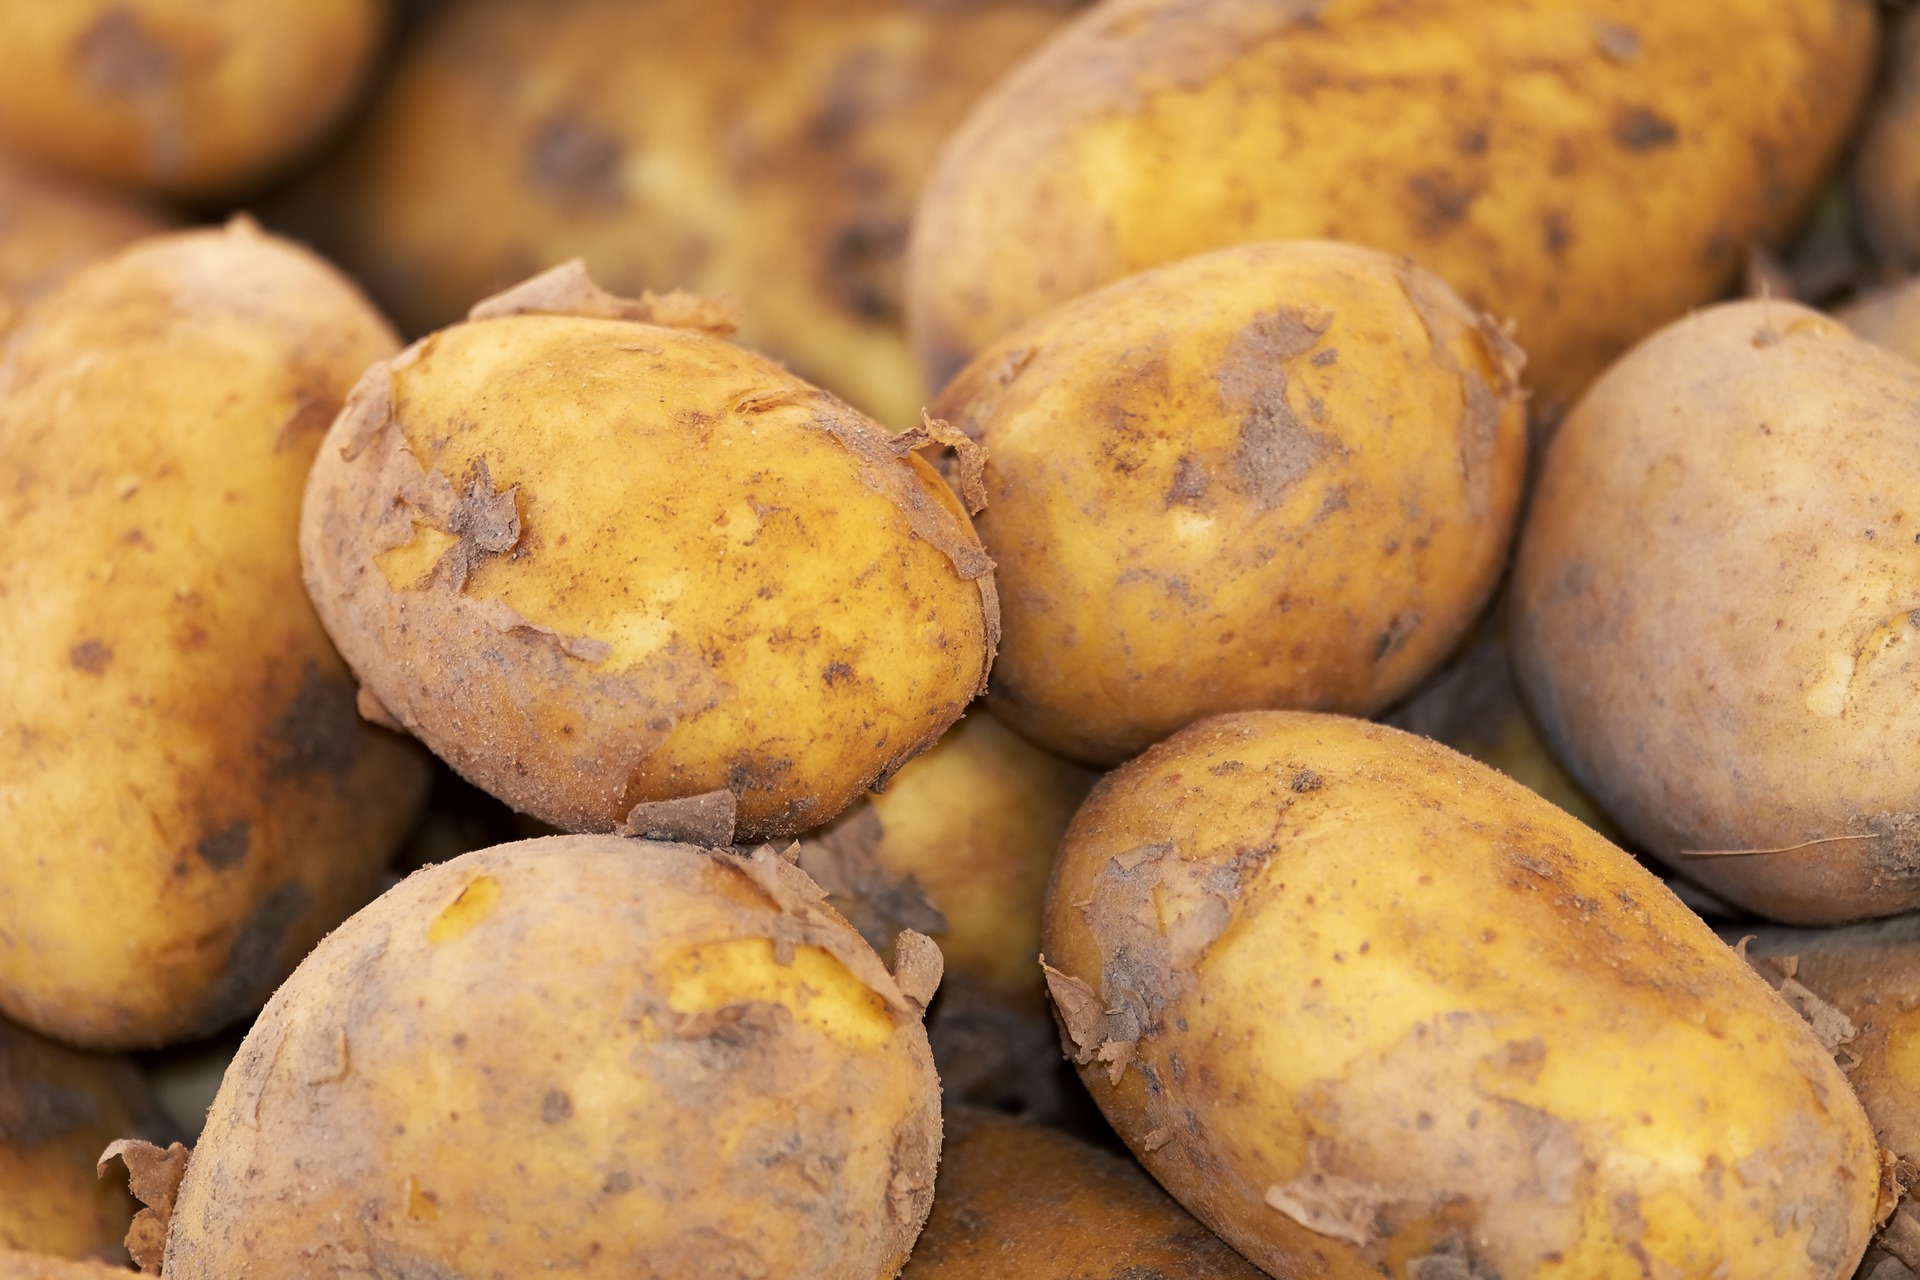 감자를 캐서 흙을 대략 털어내고 쌓아 놓은 감자 사진 - 소음인(少陰人)에게 맞는 음식